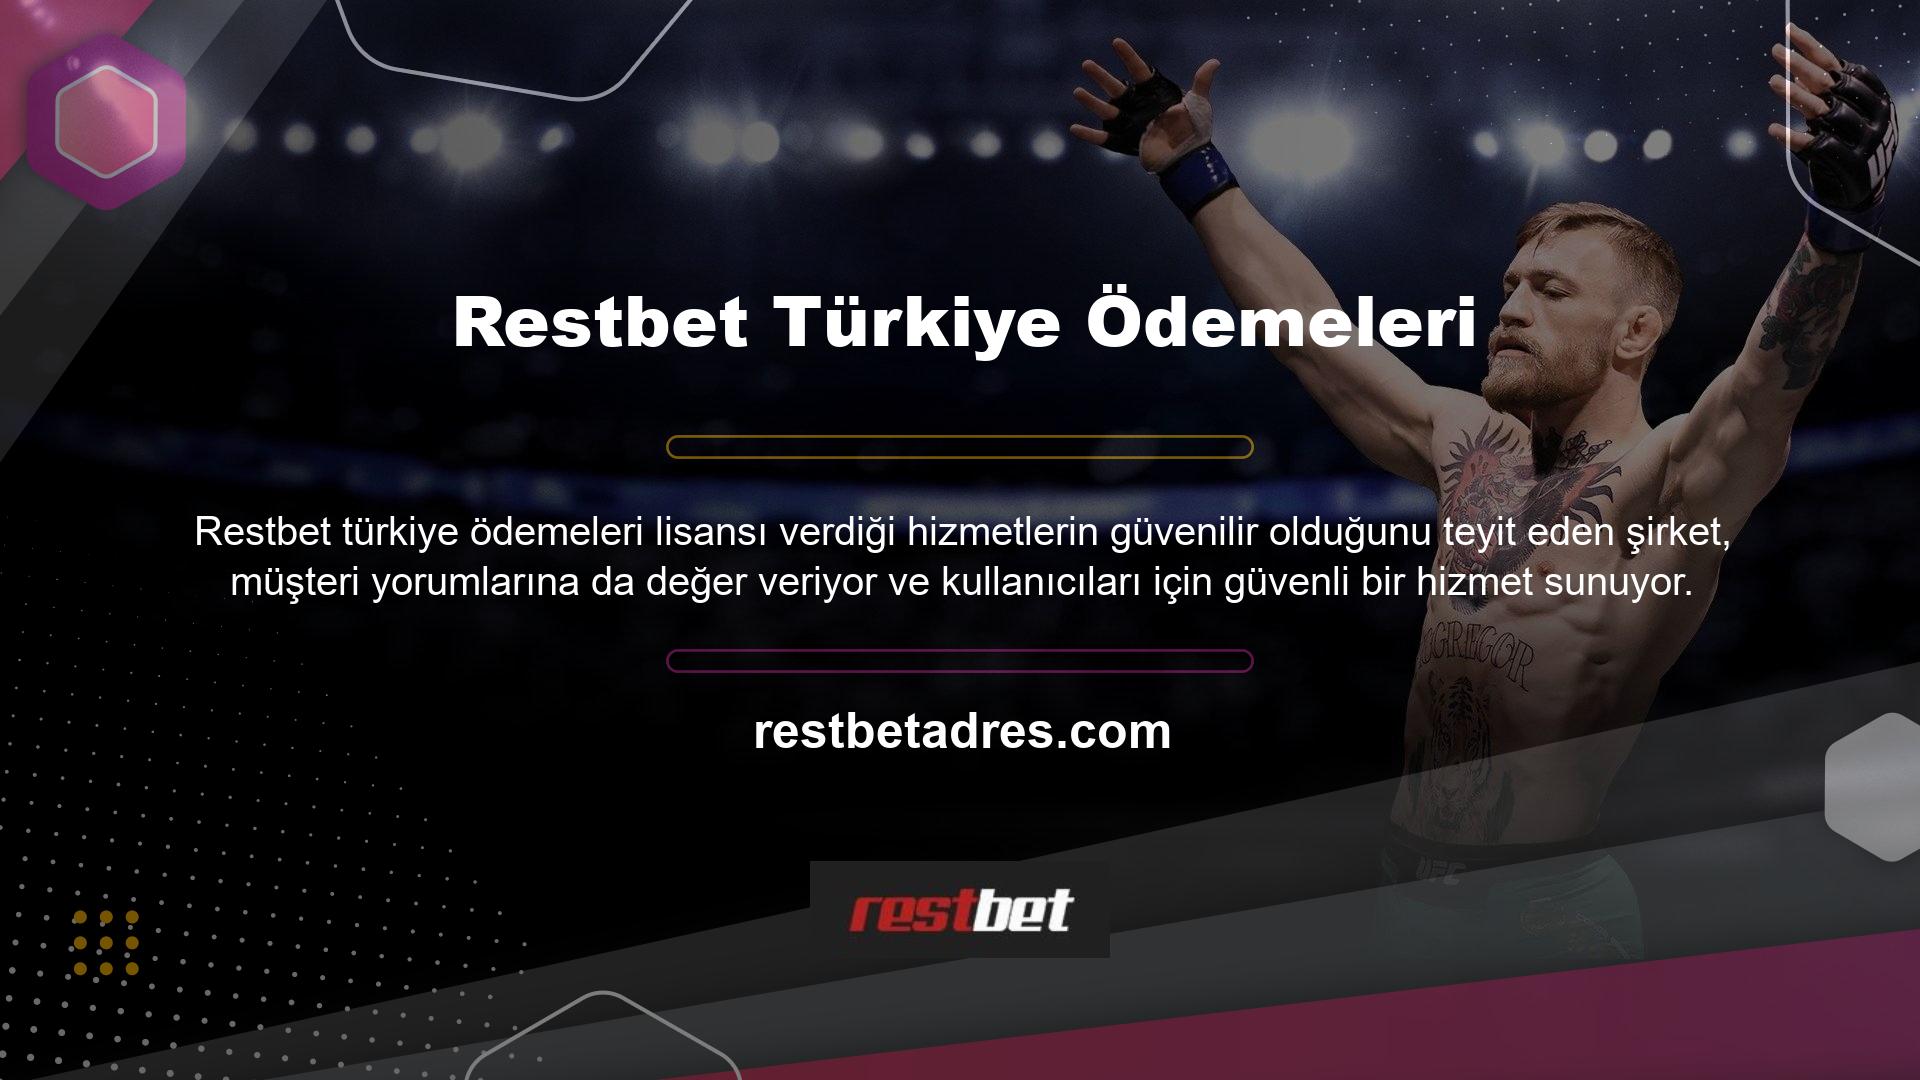 Özellikle Türkiye'de artan dolandırıcılık vakalarından bunalan oyuncular, oyunlarını güvenilir bir şekilde oynayabilecek ve kazançlarını kolayca çekebilecek şirketler arıyor